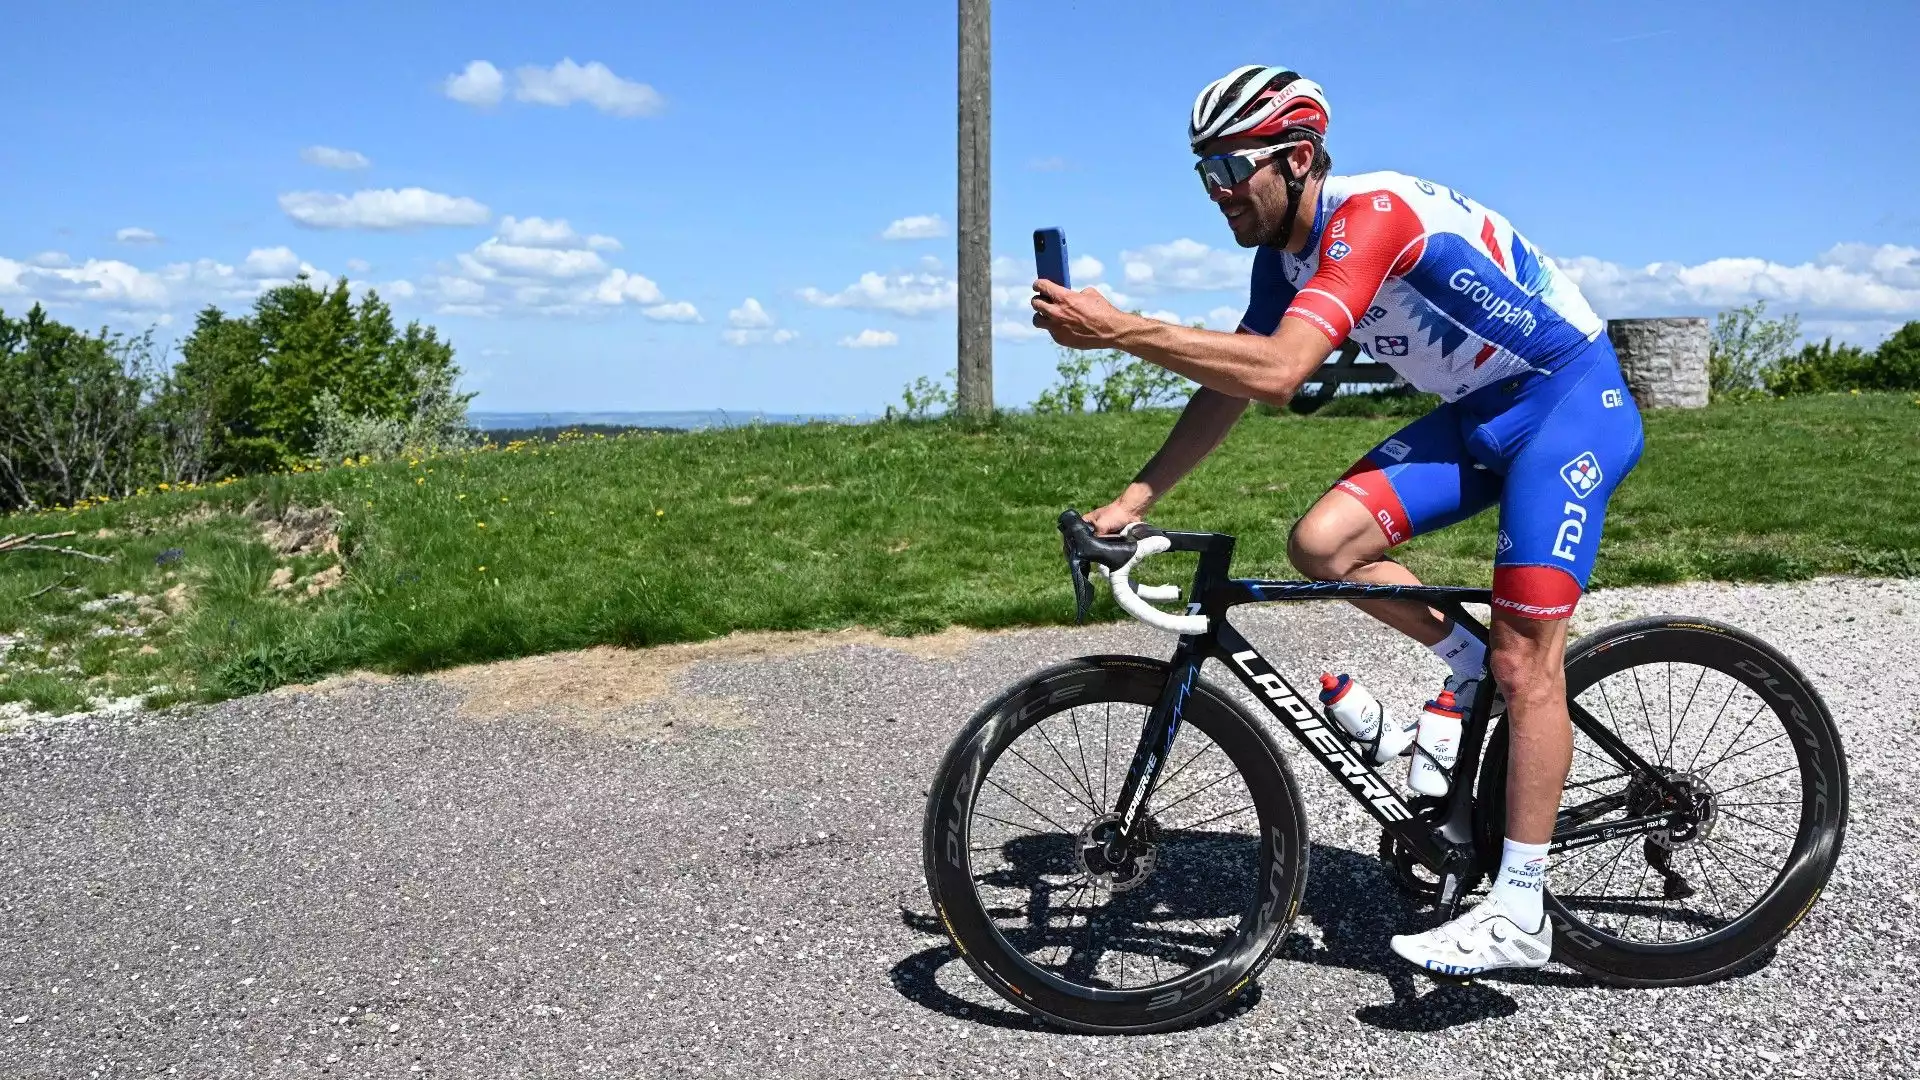 In carriera Pinot ha vinto il Giro di Lombardia 2018, 3 tappe al Tour de France, 1 al Giro d'Italia e 2 alla Vuelta a España